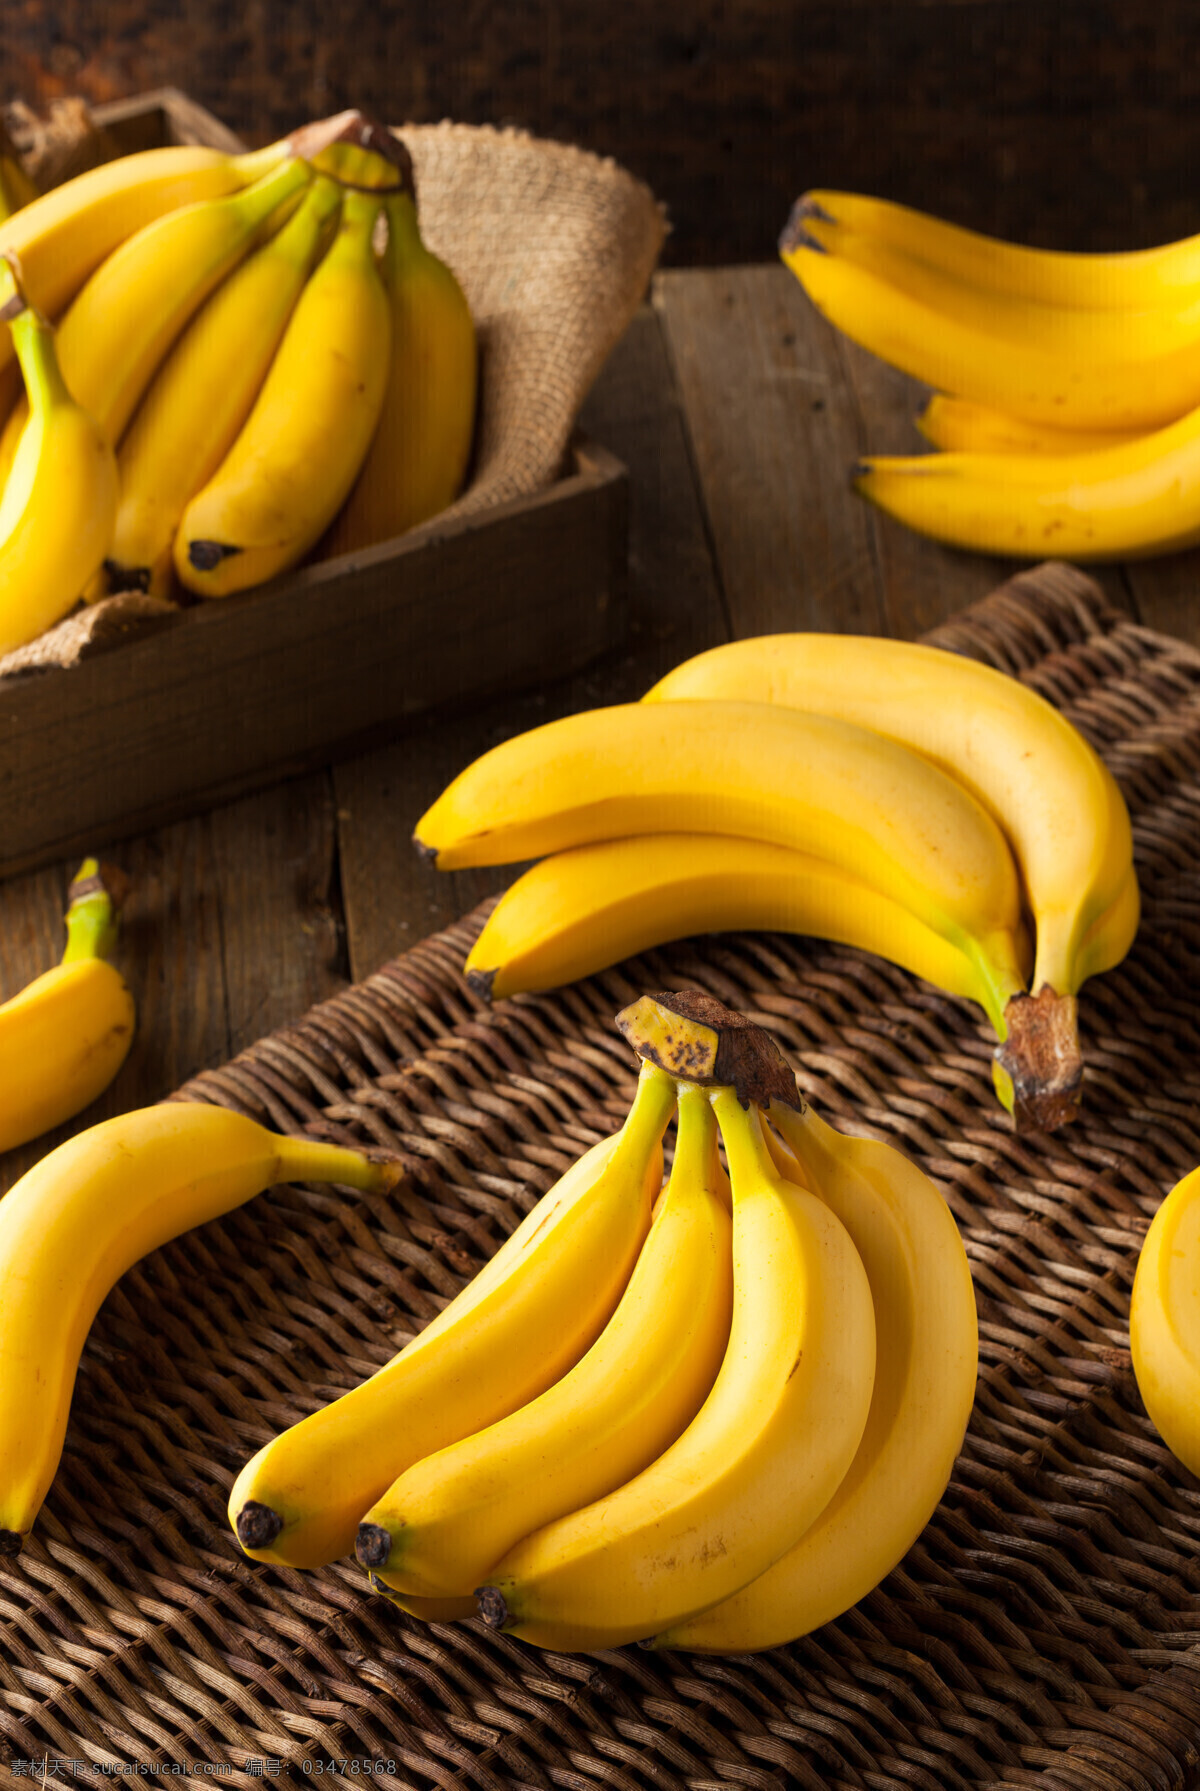 香蕉 水果 生香蕉 水果果实 鲜果蔬果 创意香蕉 切片香蕉 香蕉片 奶蕉 水果摄影 生物世界